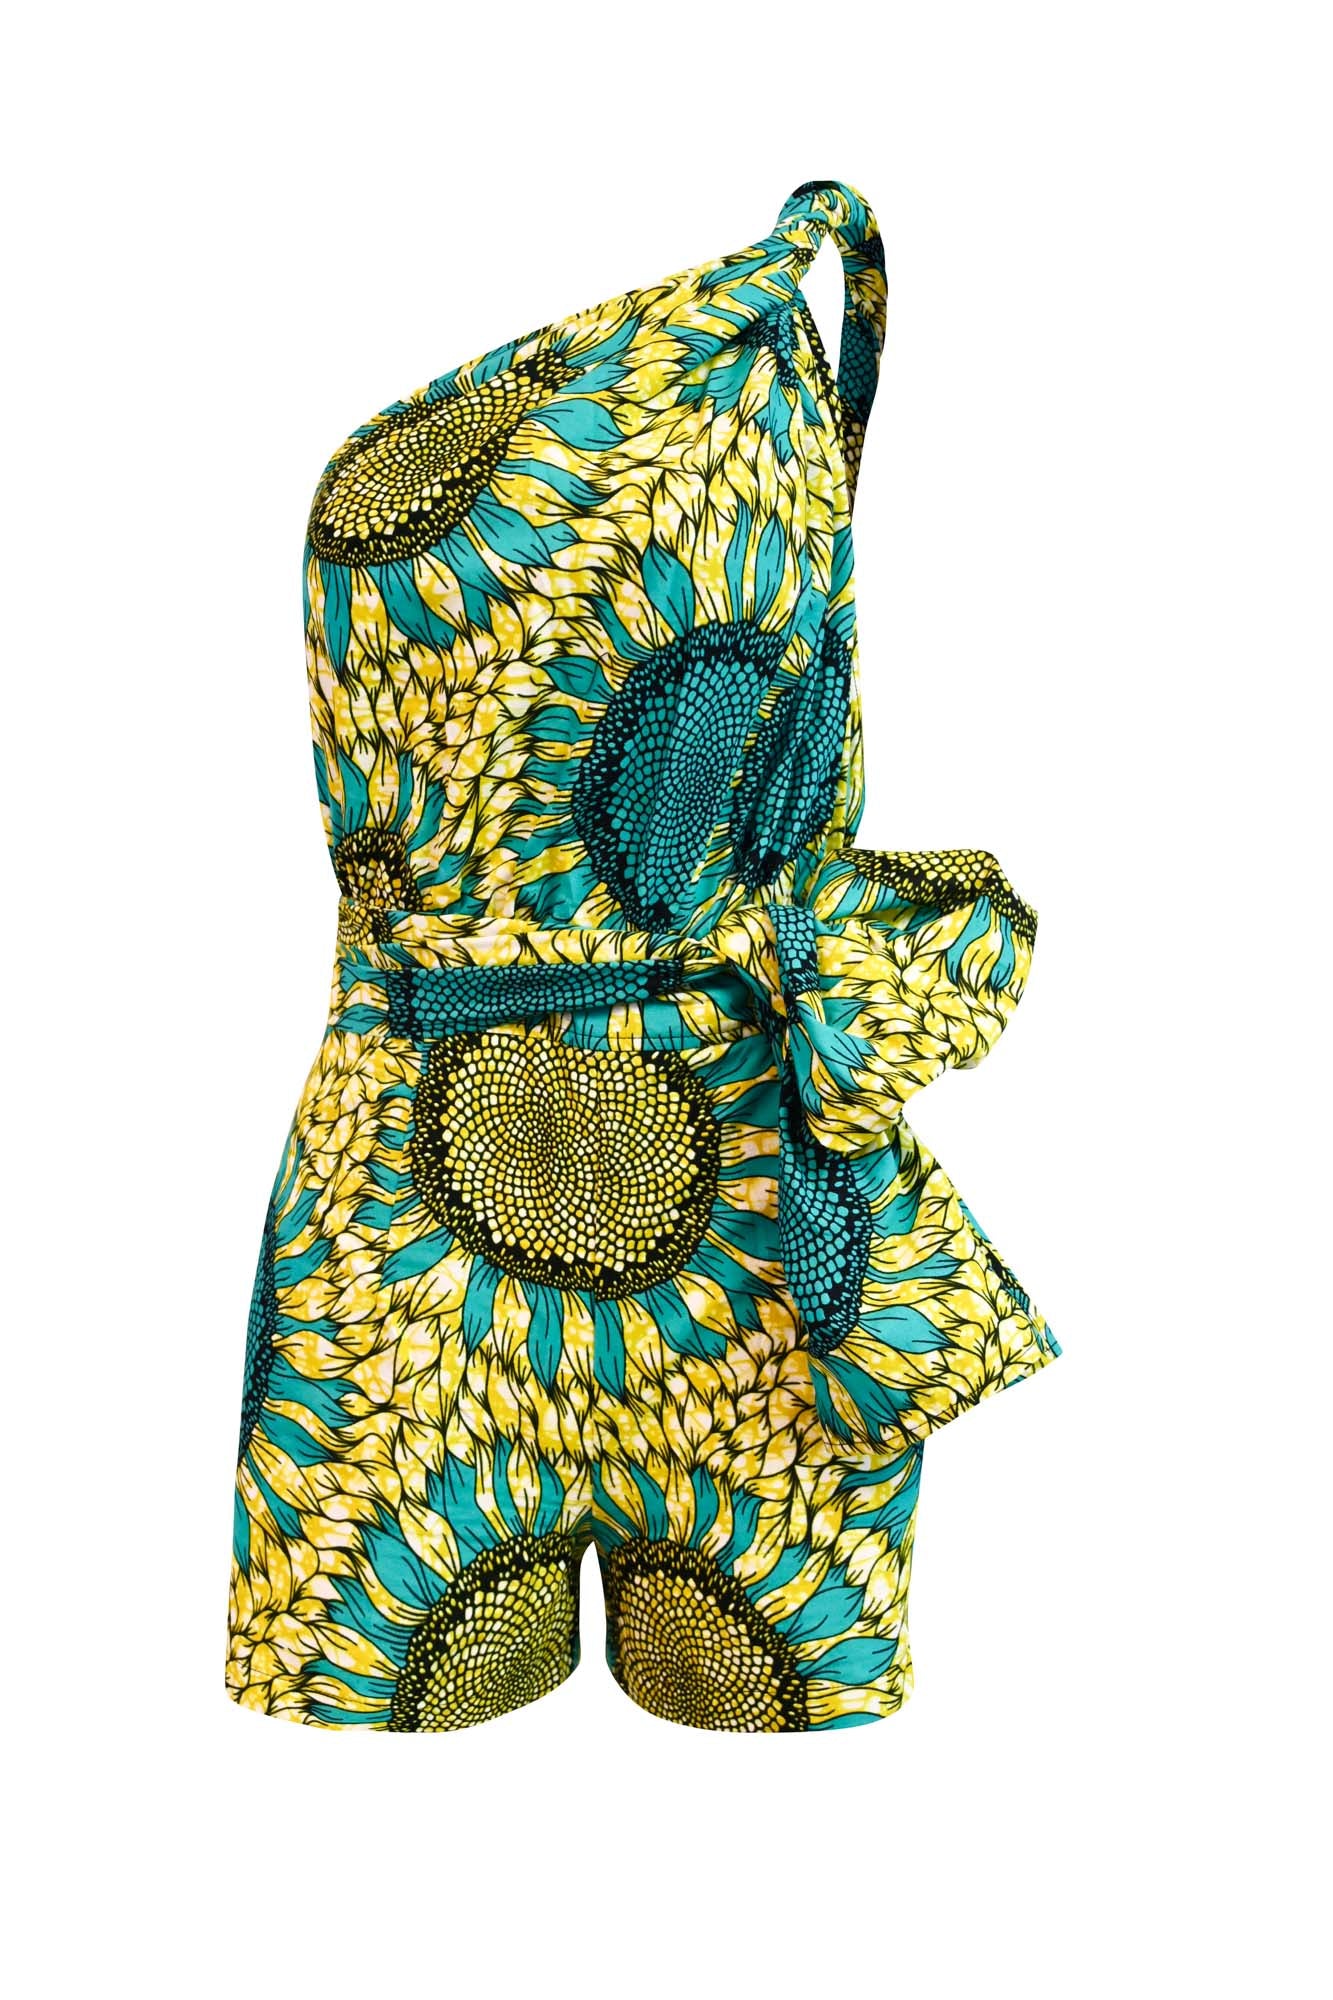 Chinwe Shorts Infinity Romper - Yellow/Green Sunflower Print |TROPICANA